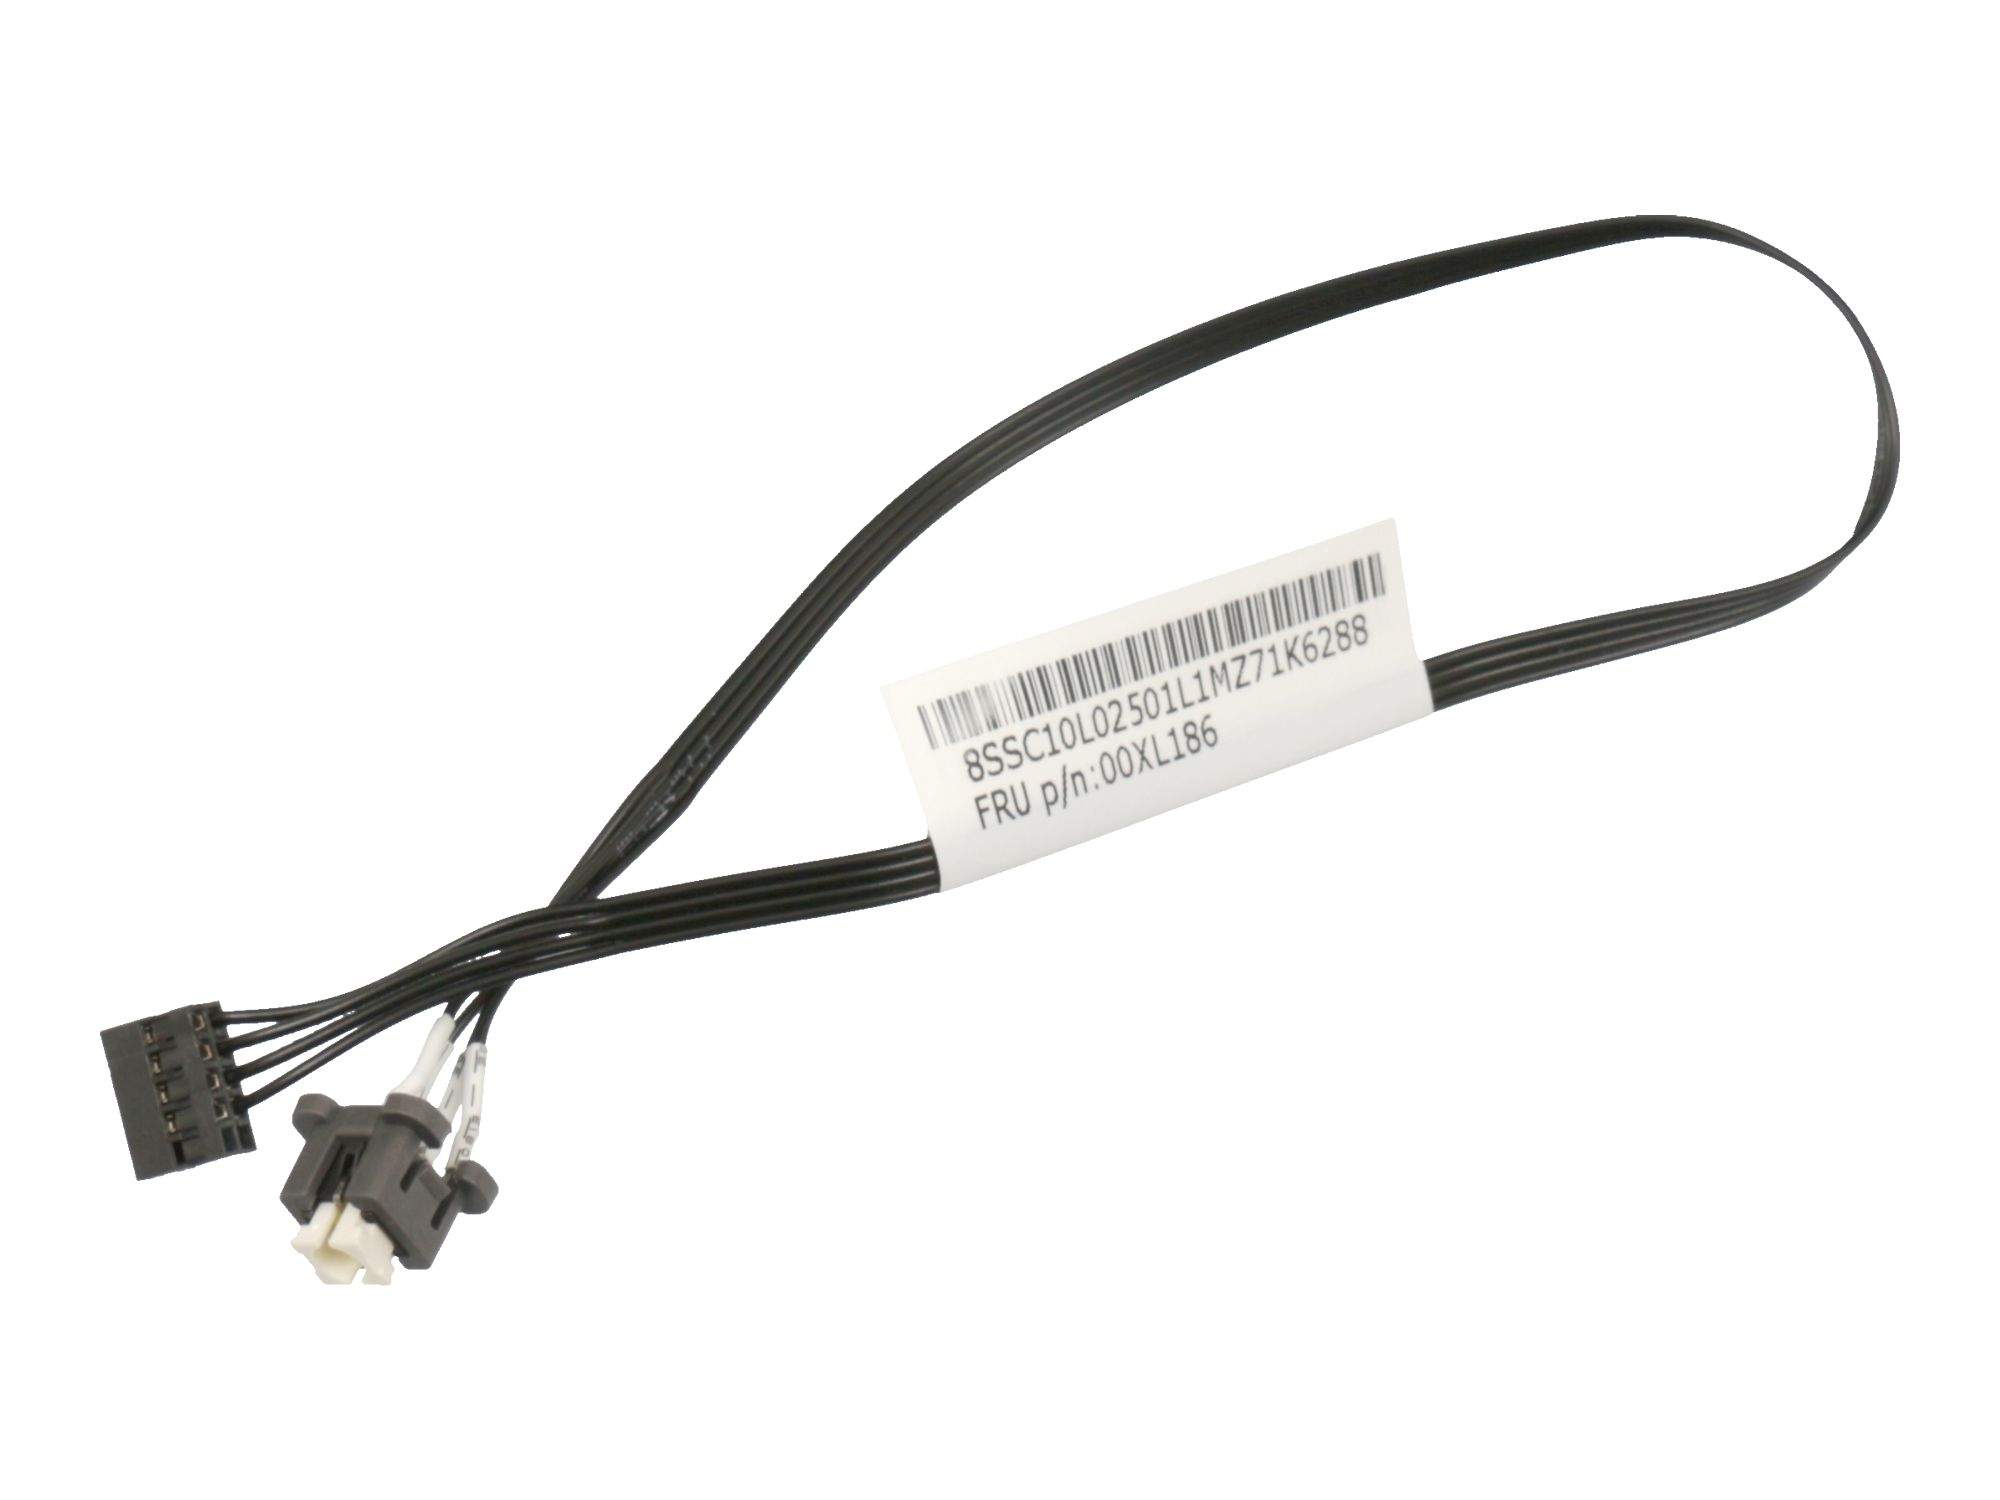 LENOVO Cable Fru280mm LED 1SW L